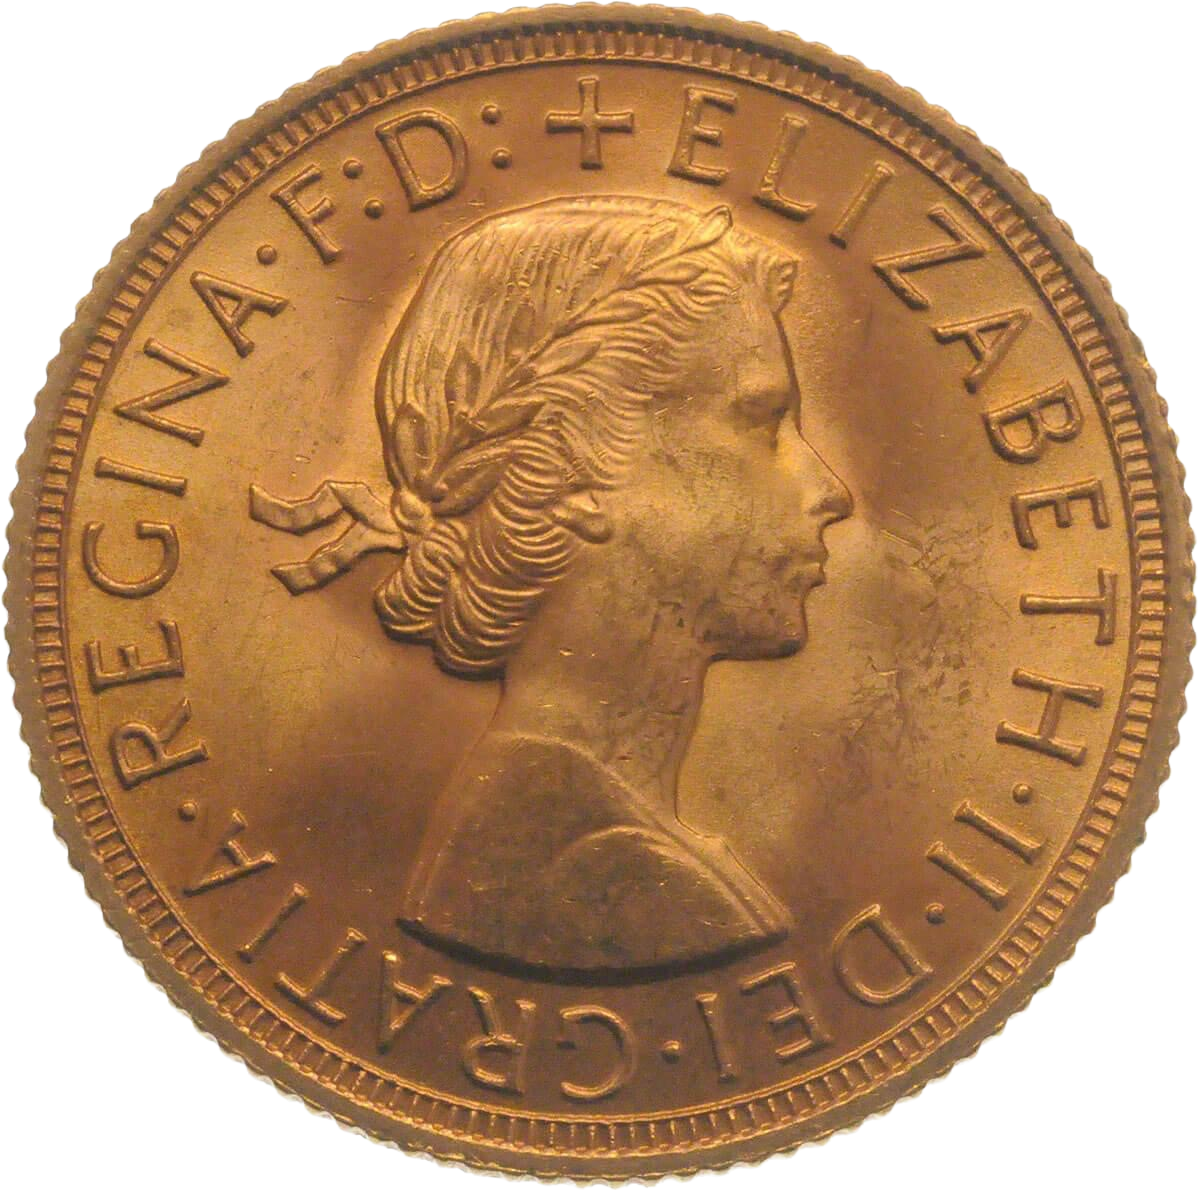 Gold Half Sovereign - Elizabeth II - First Portrait - 1957-1968